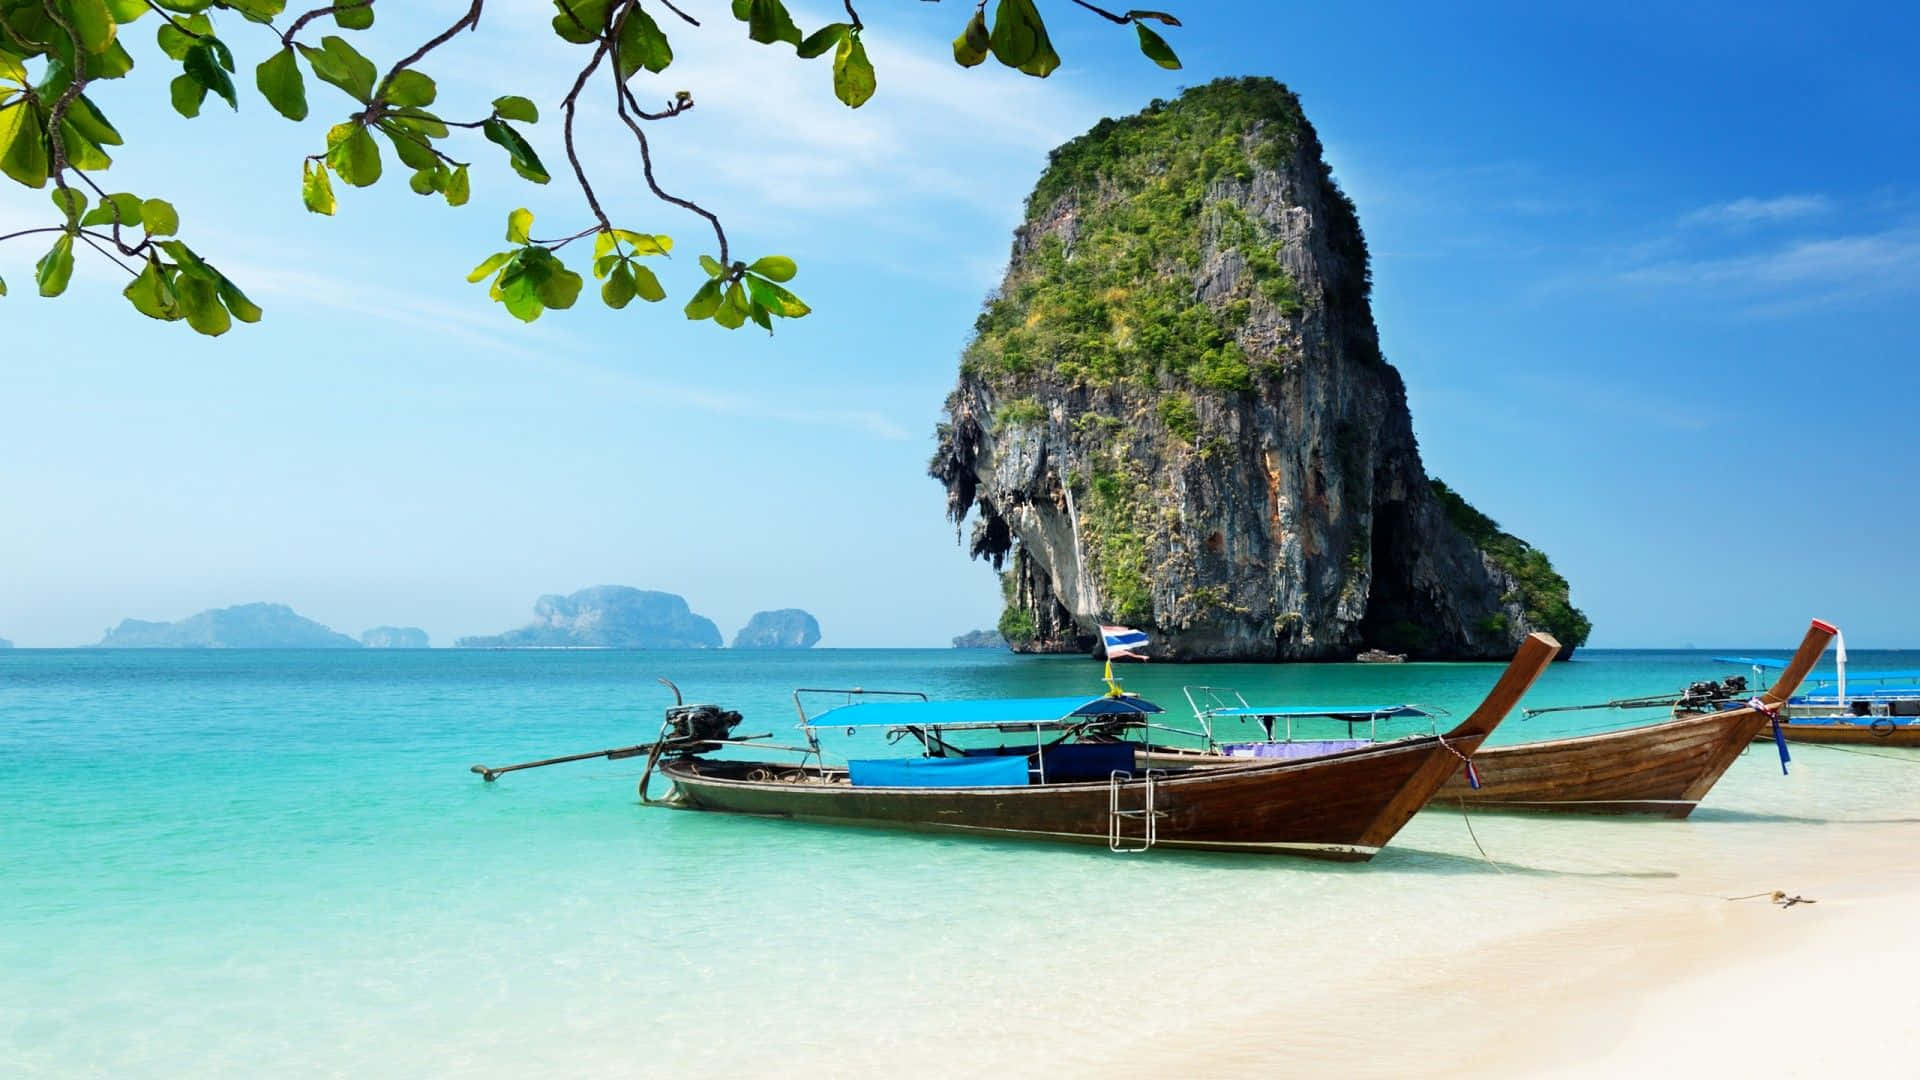 Hintergrundbildvon Thailand